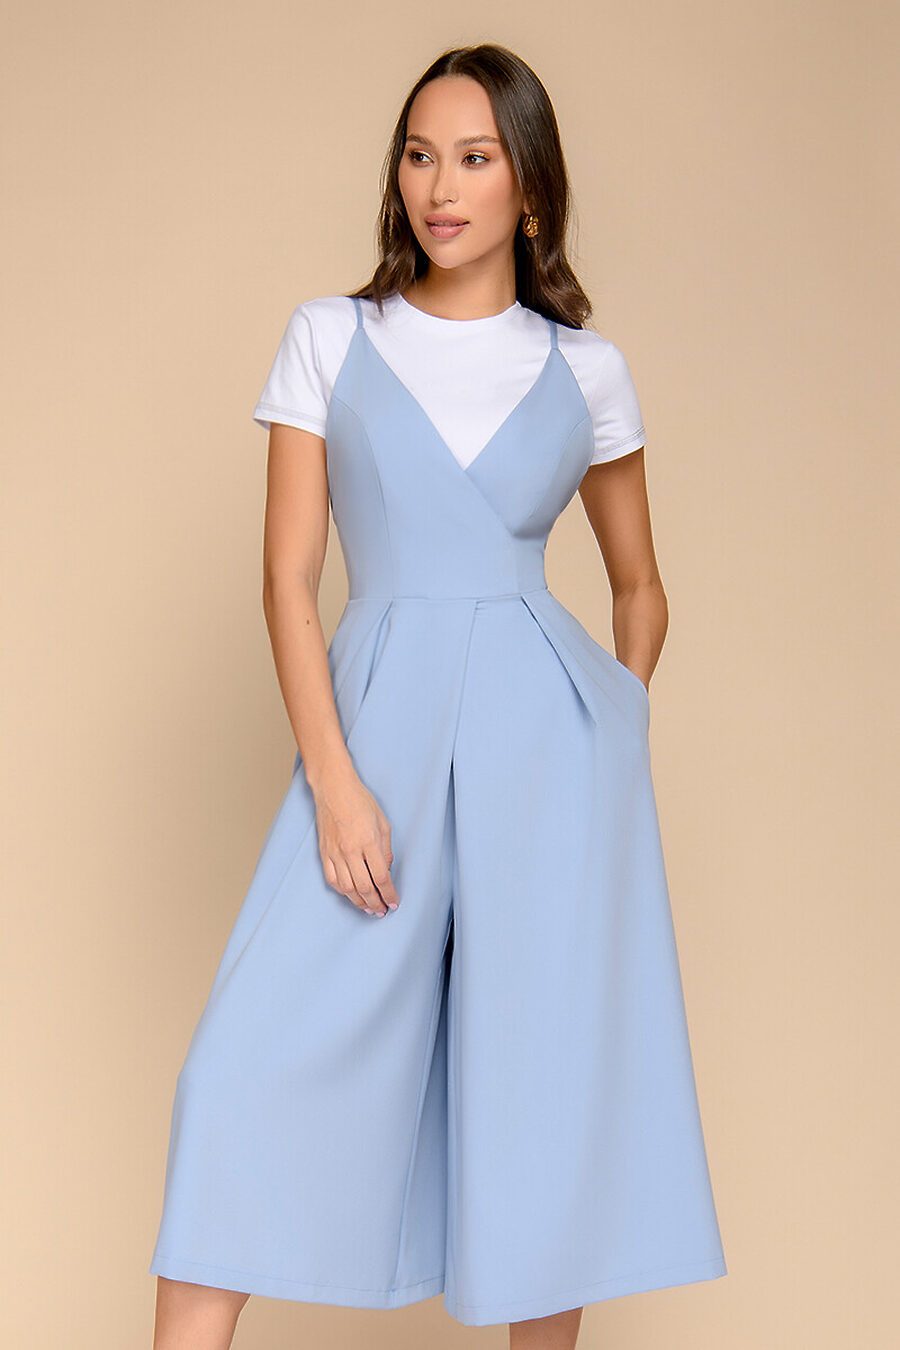 Комбинезон для женщин 1001 DRESS 775886 купить оптом от производителя. Совместная покупка женской одежды в OptMoyo